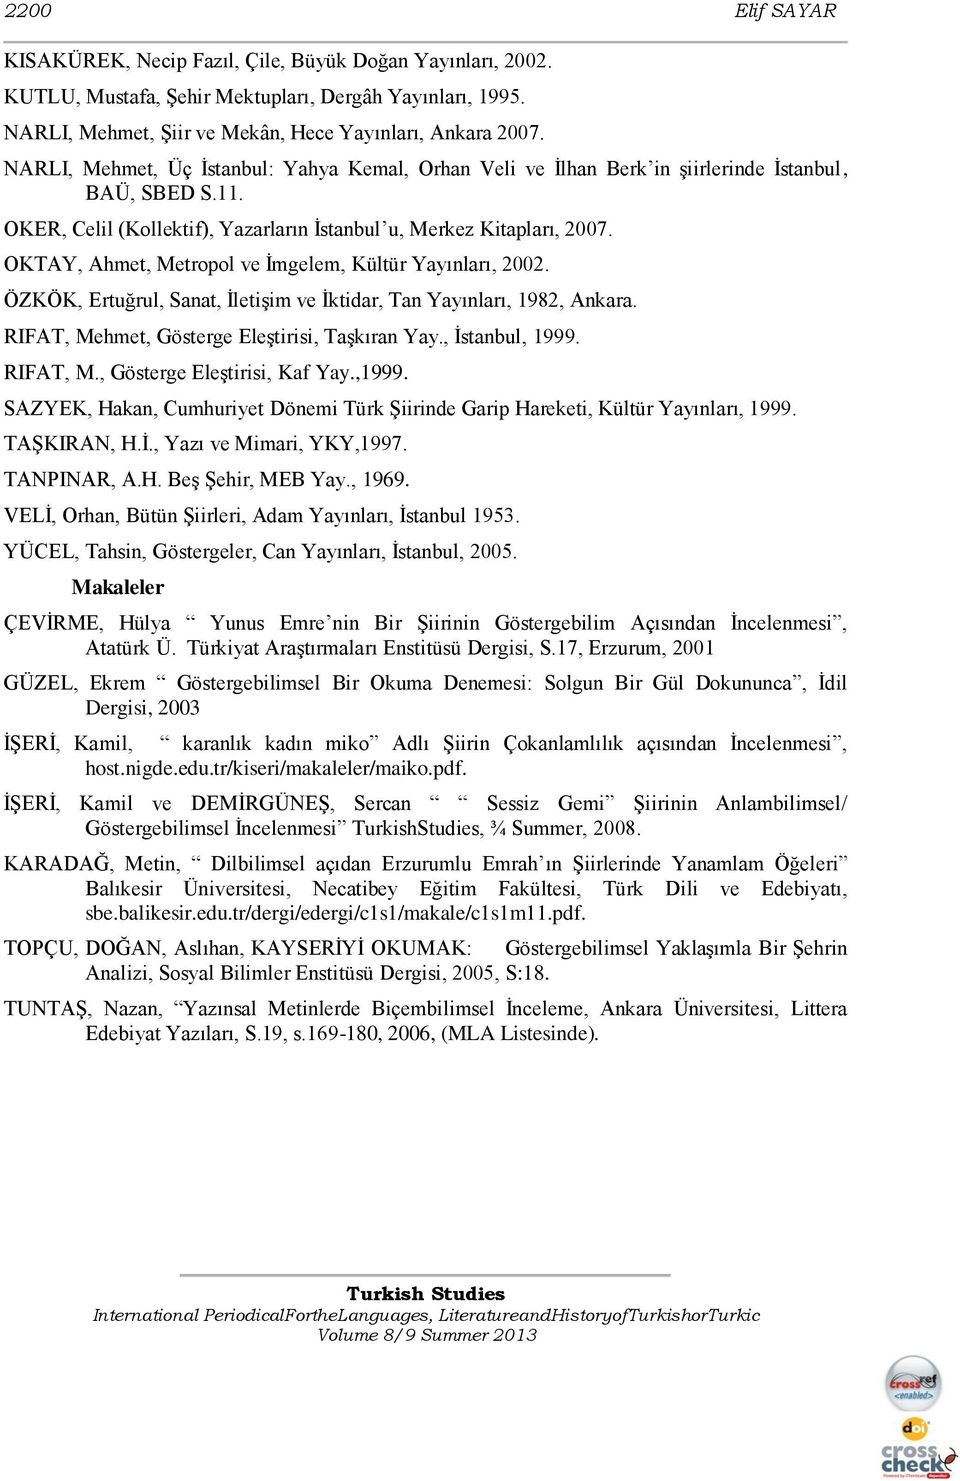 OKTAY, Ahmet, Metropol ve Ġmgelem, Kültür Yayınları, 2002. ÖZKÖK, Ertuğrul, Sanat, ĠletiĢim ve Ġktidar, Tan Yayınları, 1982, Ankara. RIFAT, Mehmet, Gösterge EleĢtirisi, TaĢkıran Yay., Ġstanbul, 1999.